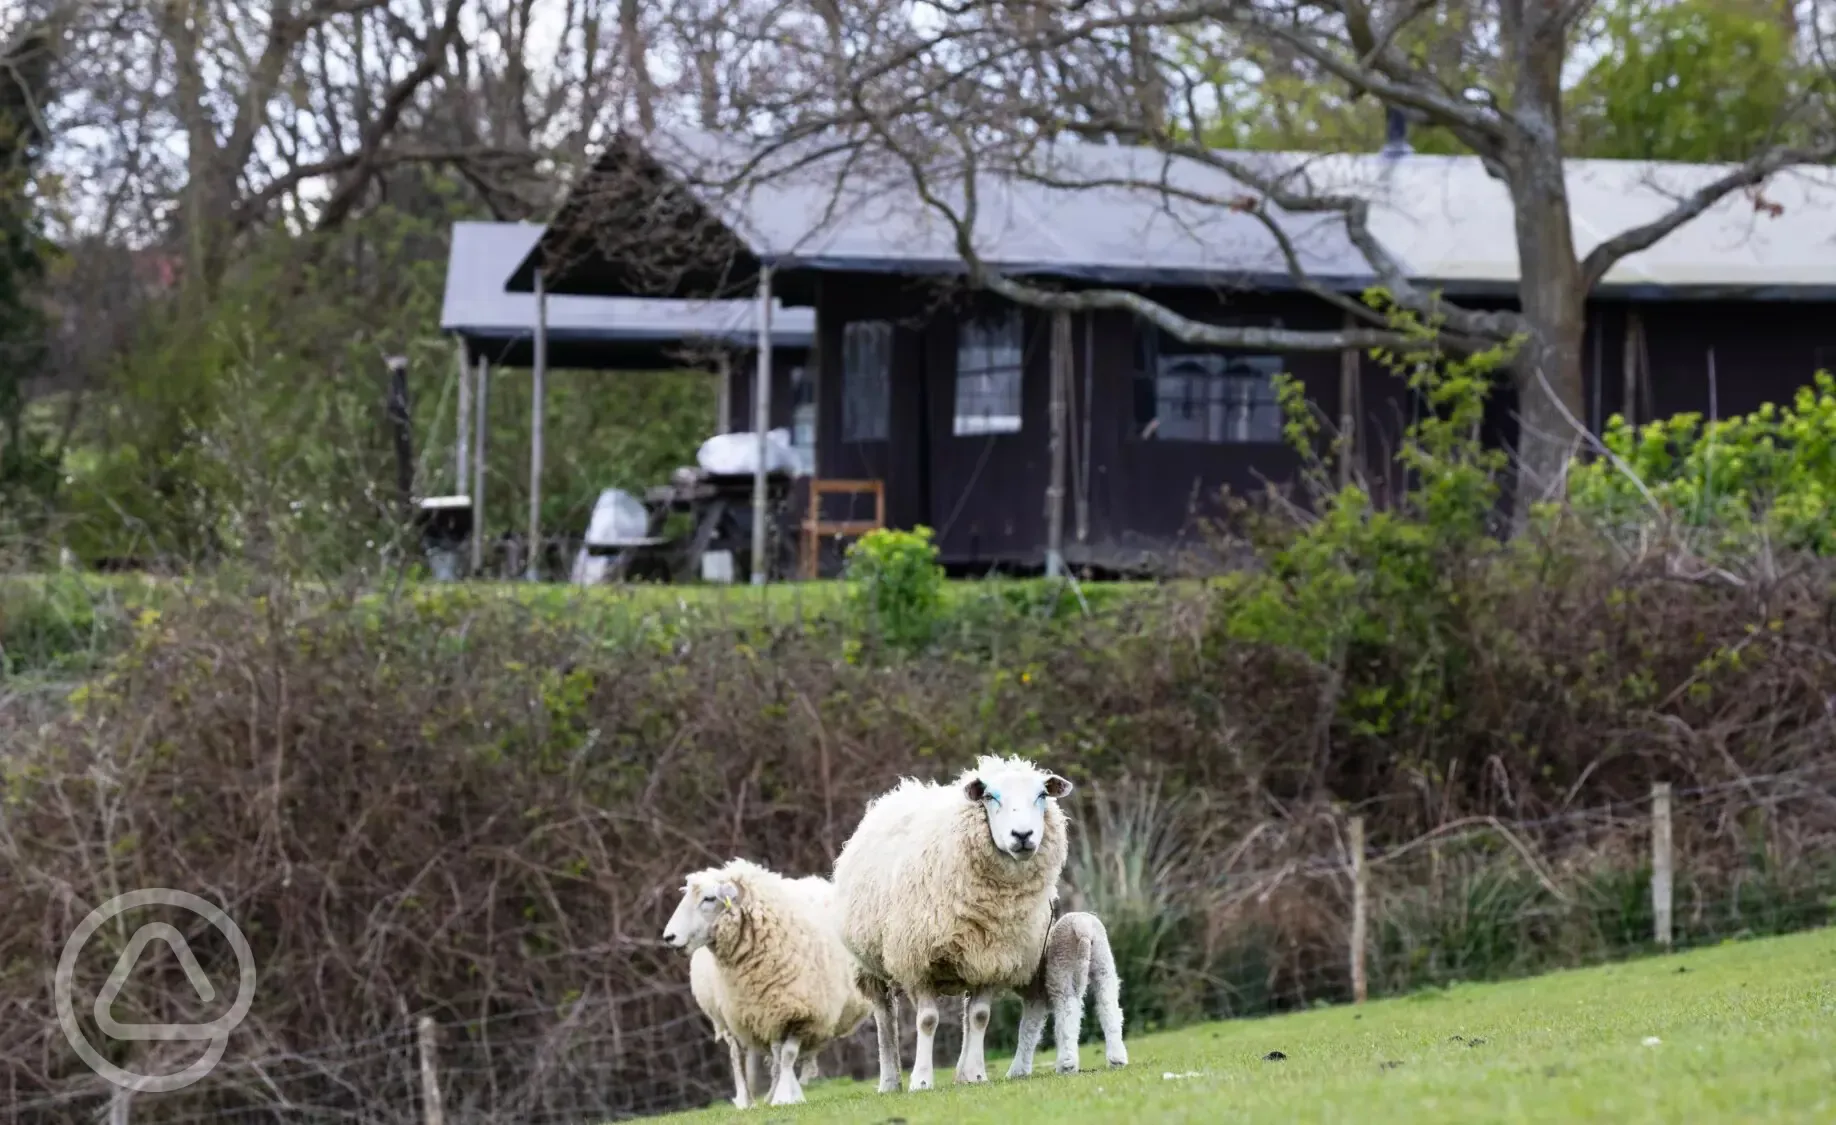 Sheep grazing in nearby field